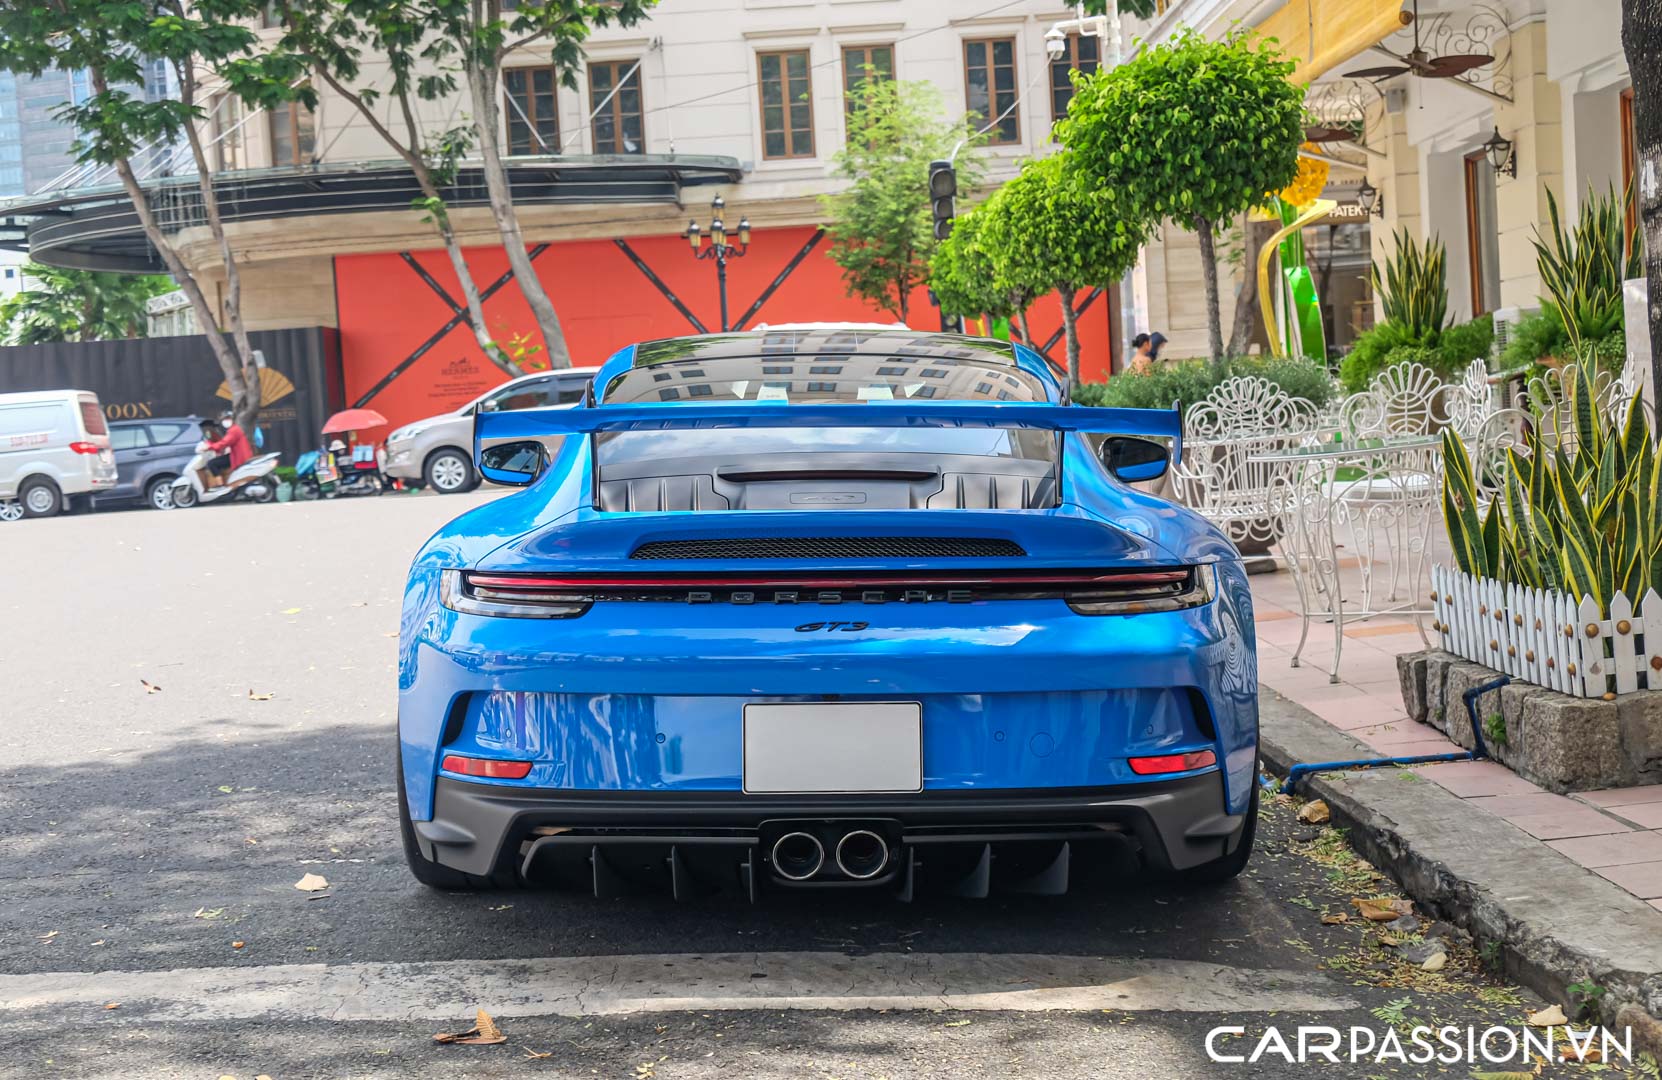 CP-Porsche 911 GT3 của doanh nhân Nguyễn Quốc Cường12.jpg